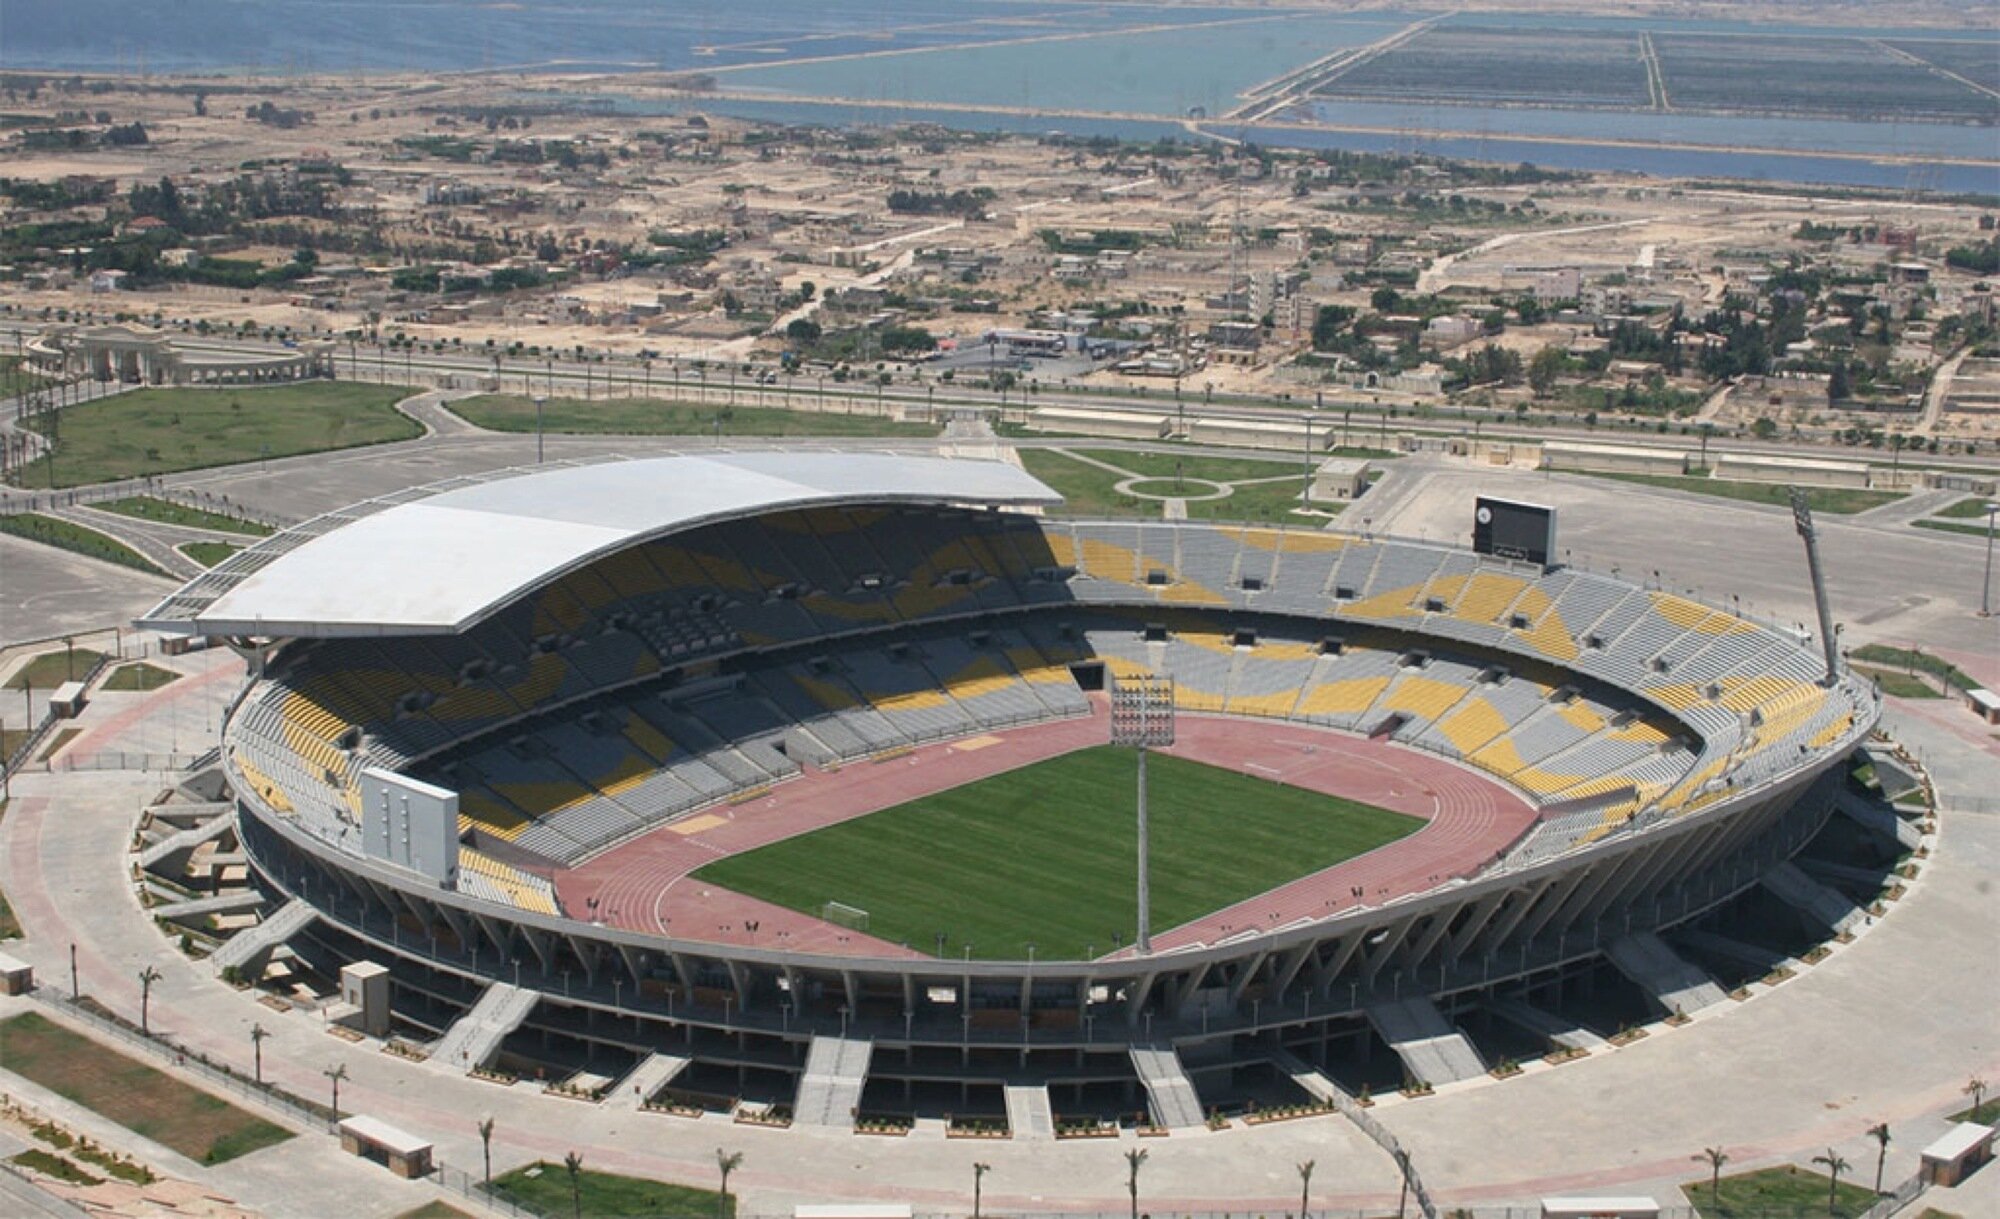 Стадионы 1 8. Борг Эль араб стадион. Египет Александрия стадион. Стадион Аль Мухаррак. Национальный стадион (Лагос).